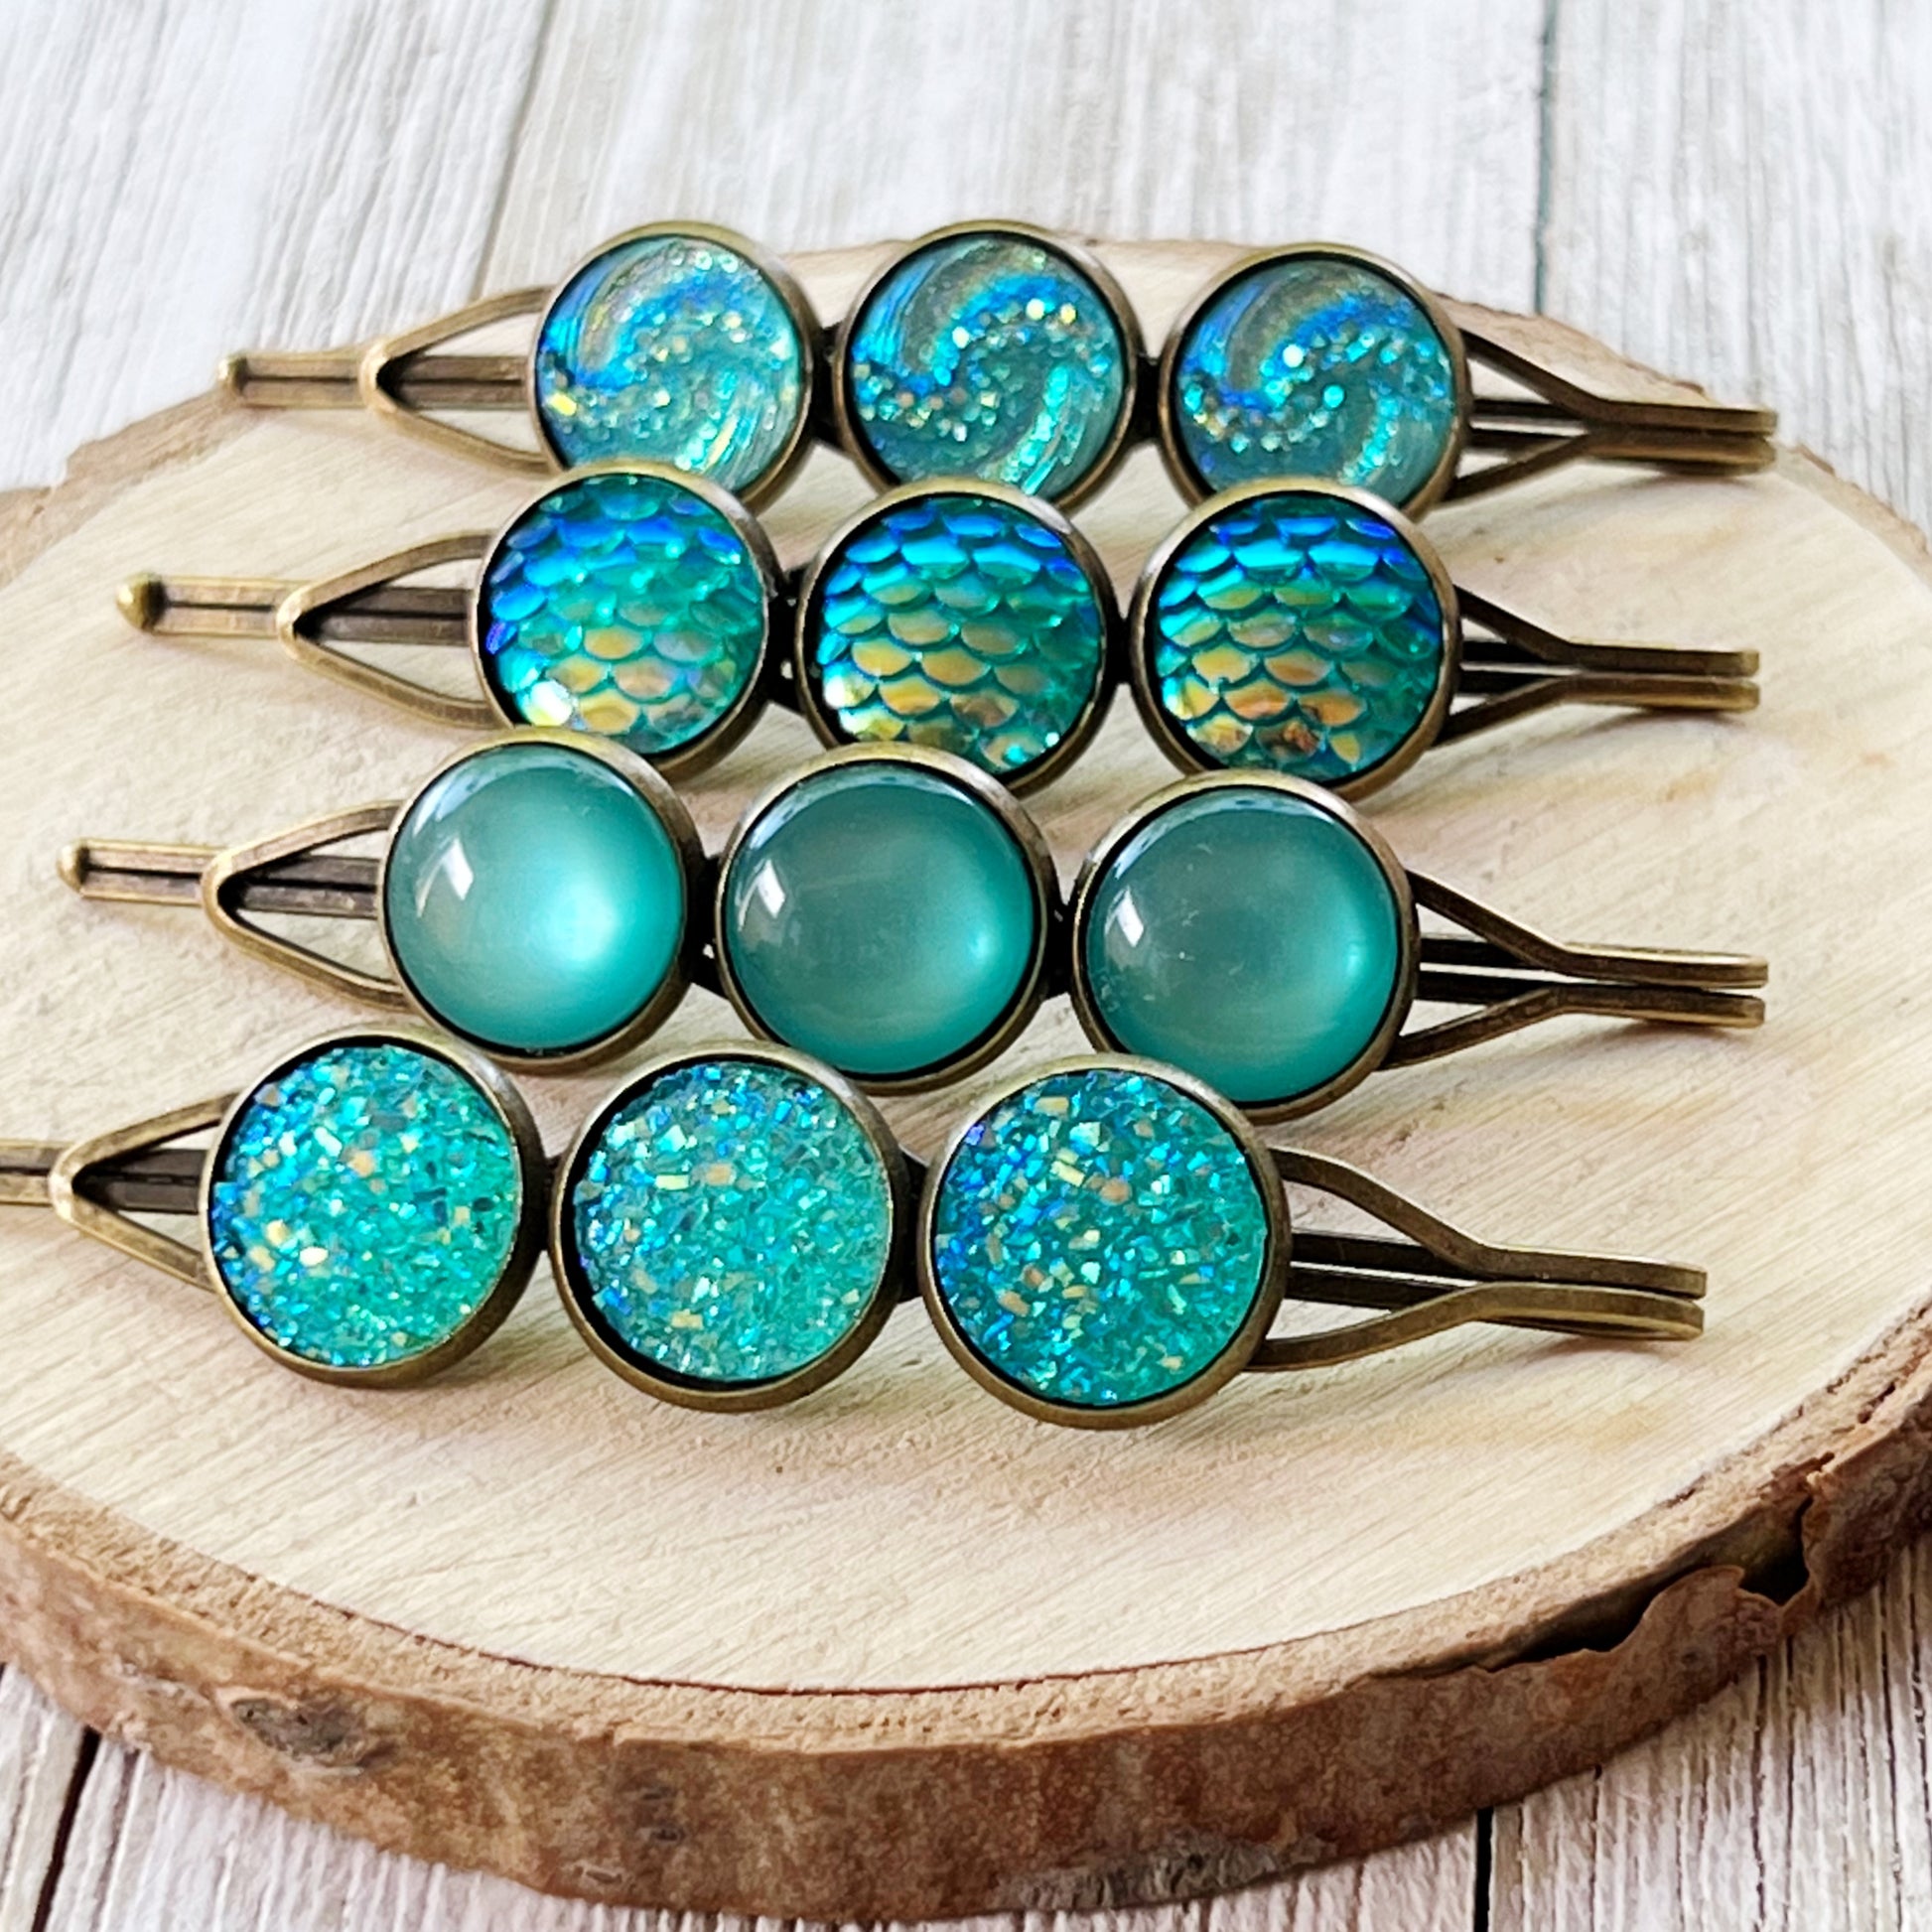 Blue Green Druzy Hair Pins - Stylish Women's Hair Accessories Hair Clips & Bobby Pins